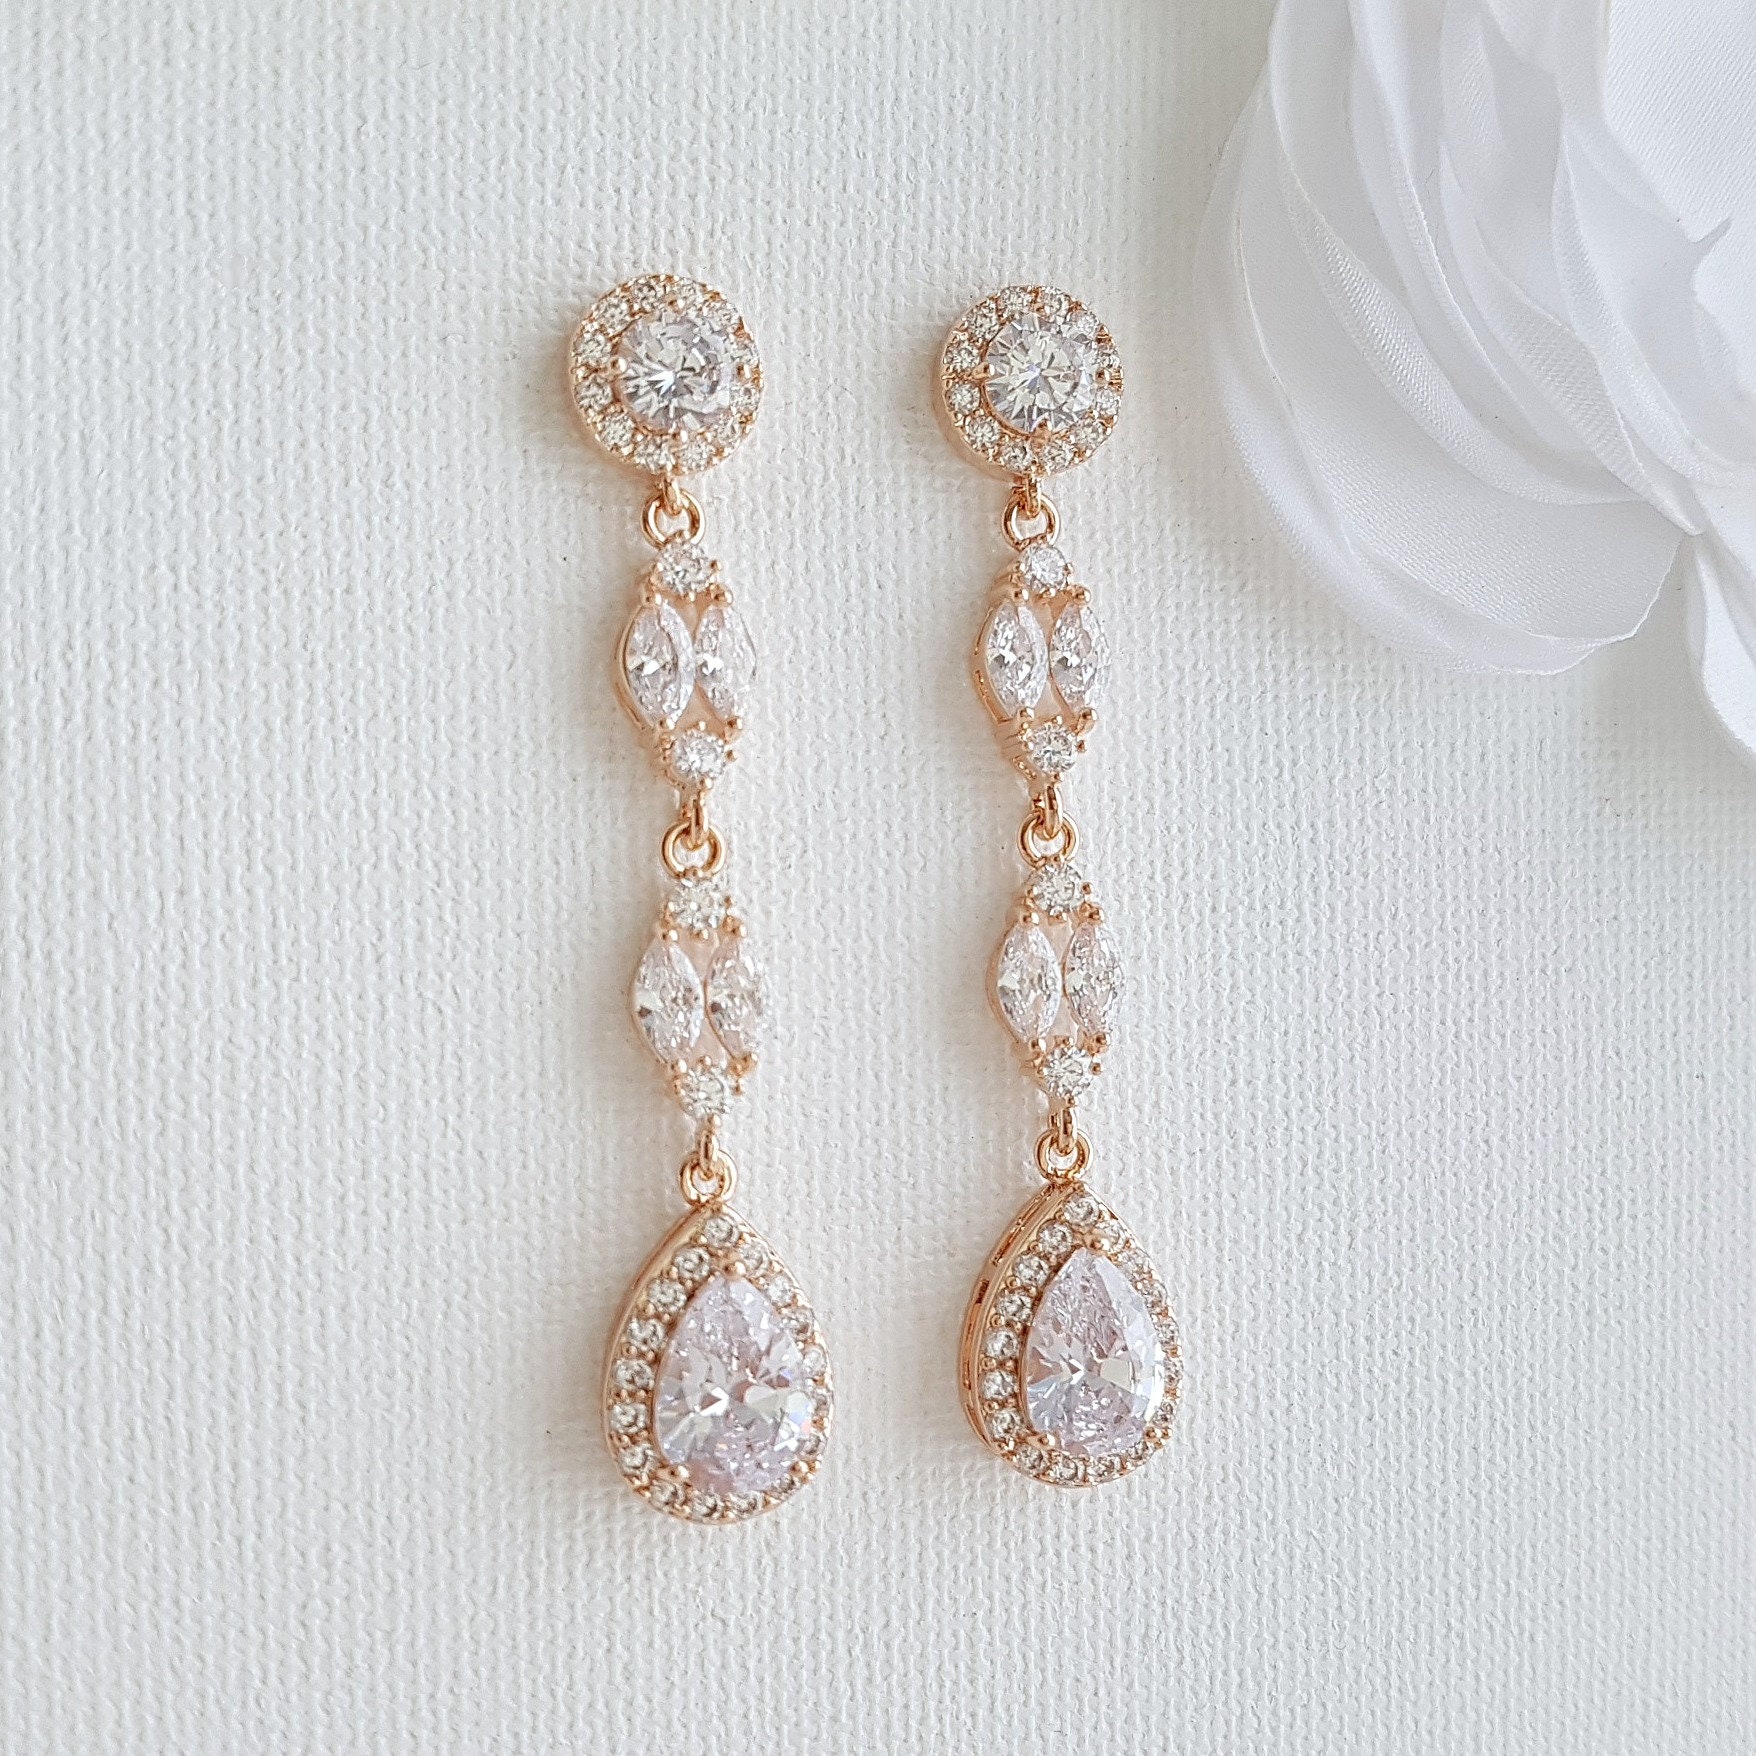 Rose Gold Bridal Earrings Long Crystal Drop Wedding Earrings | Etsy